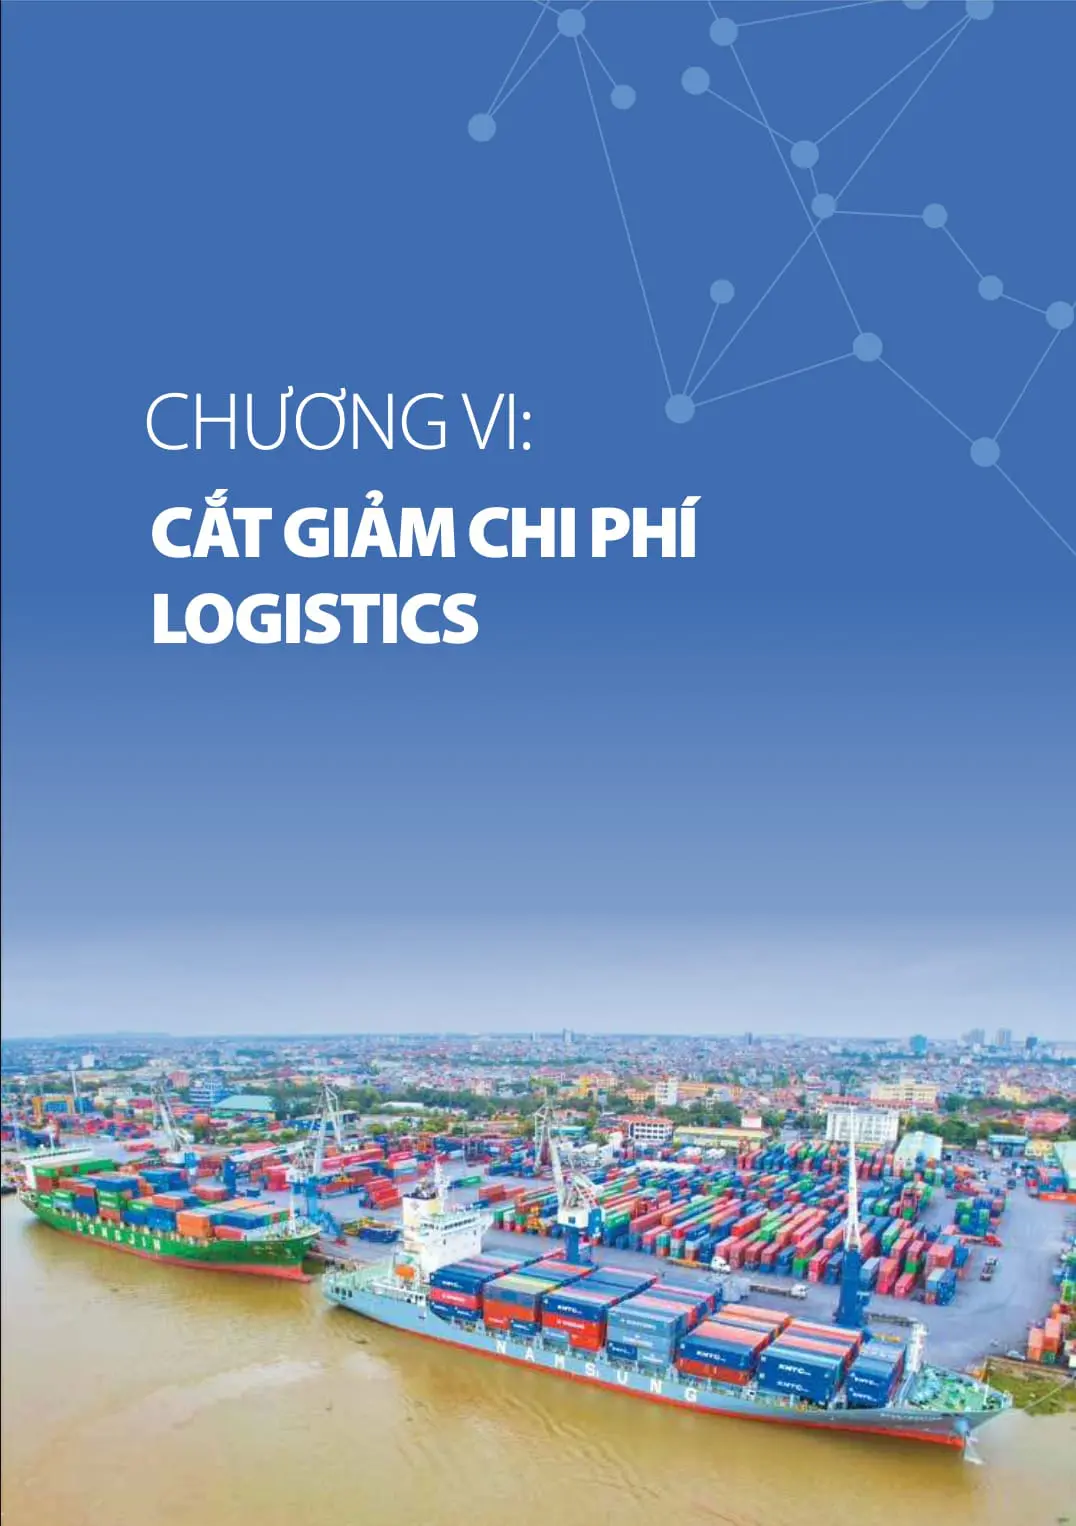 Chương 2 báo cáo logistics Việt Nam 2020: Chuyên đề: Cắt giảm chi phí logistics